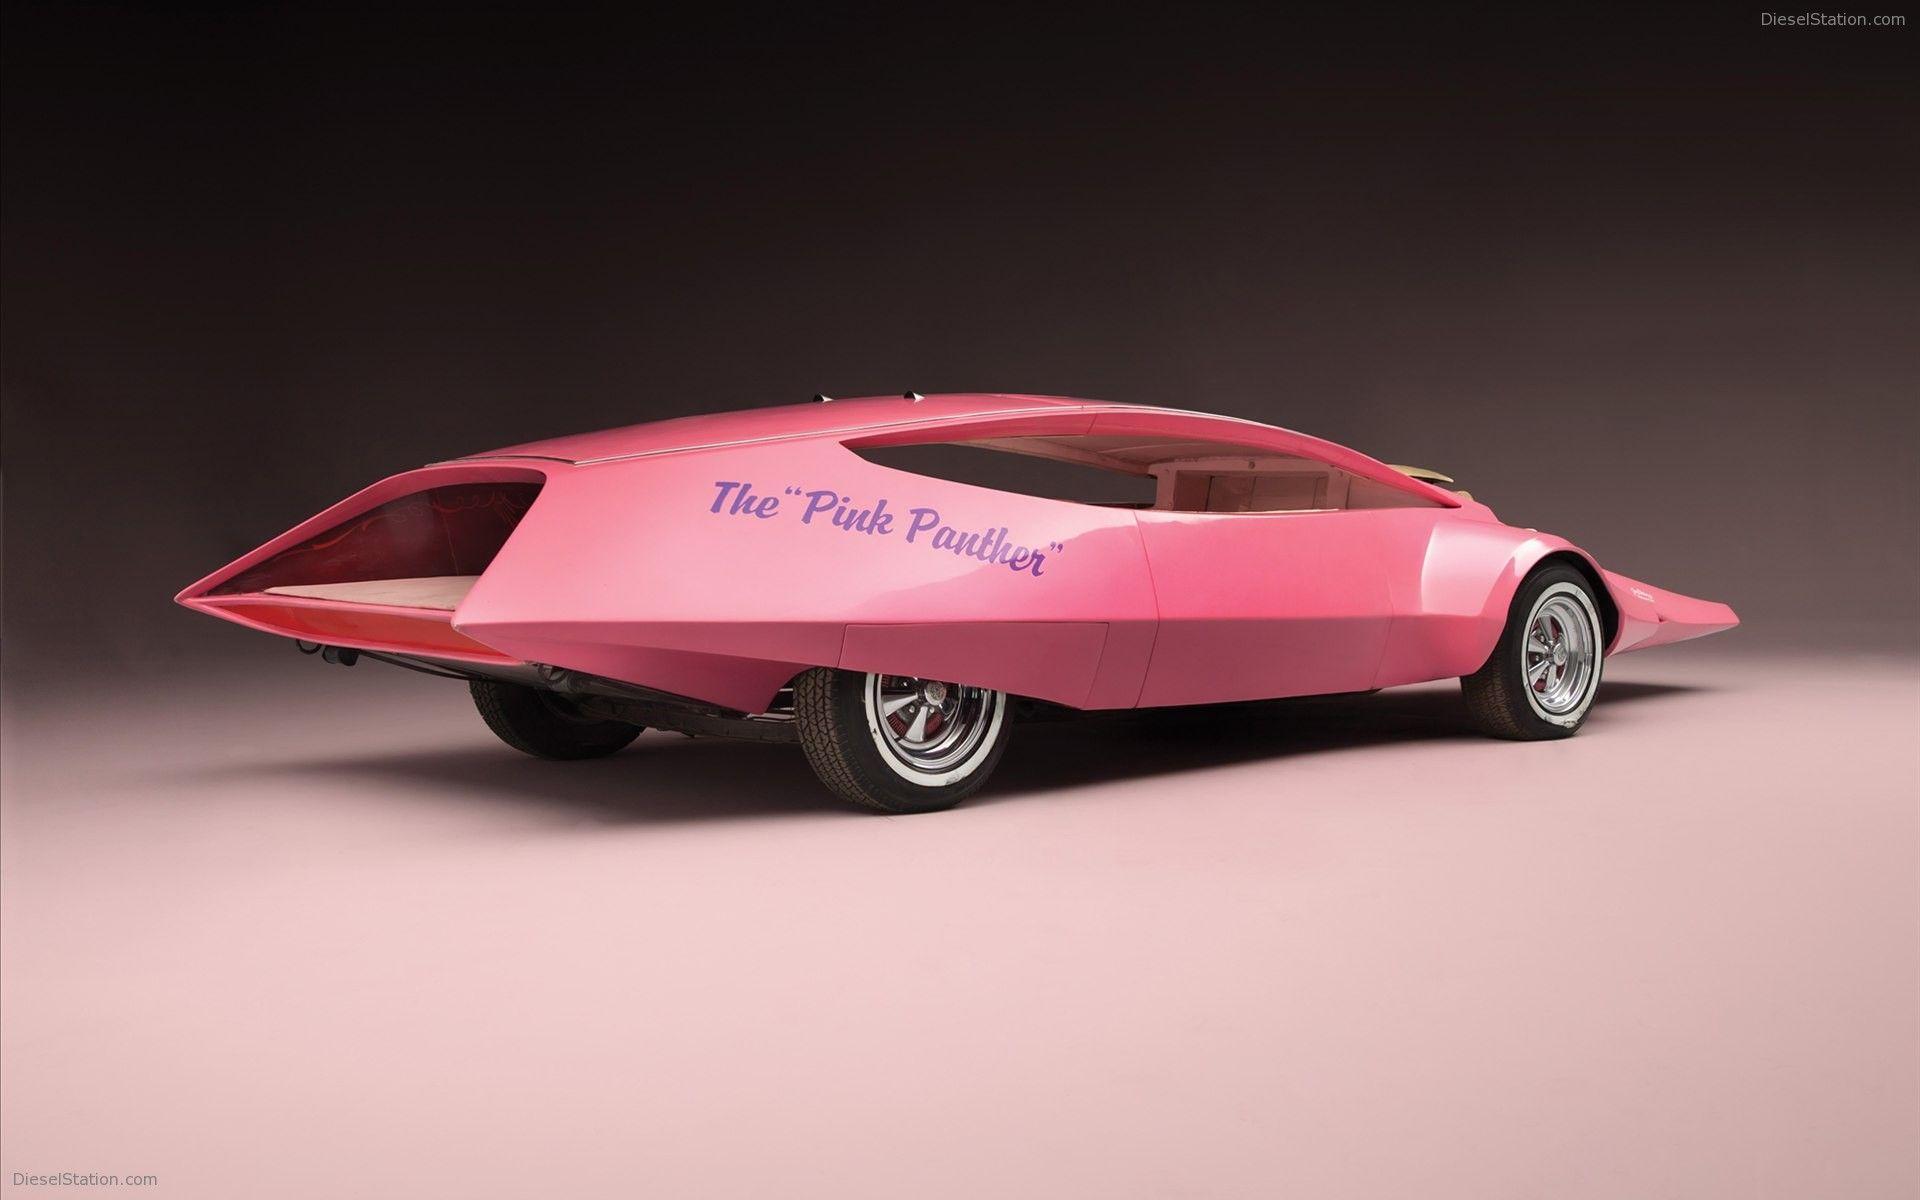 The Original Pink Panther Car Widescreen Exotic Car Wallpaper